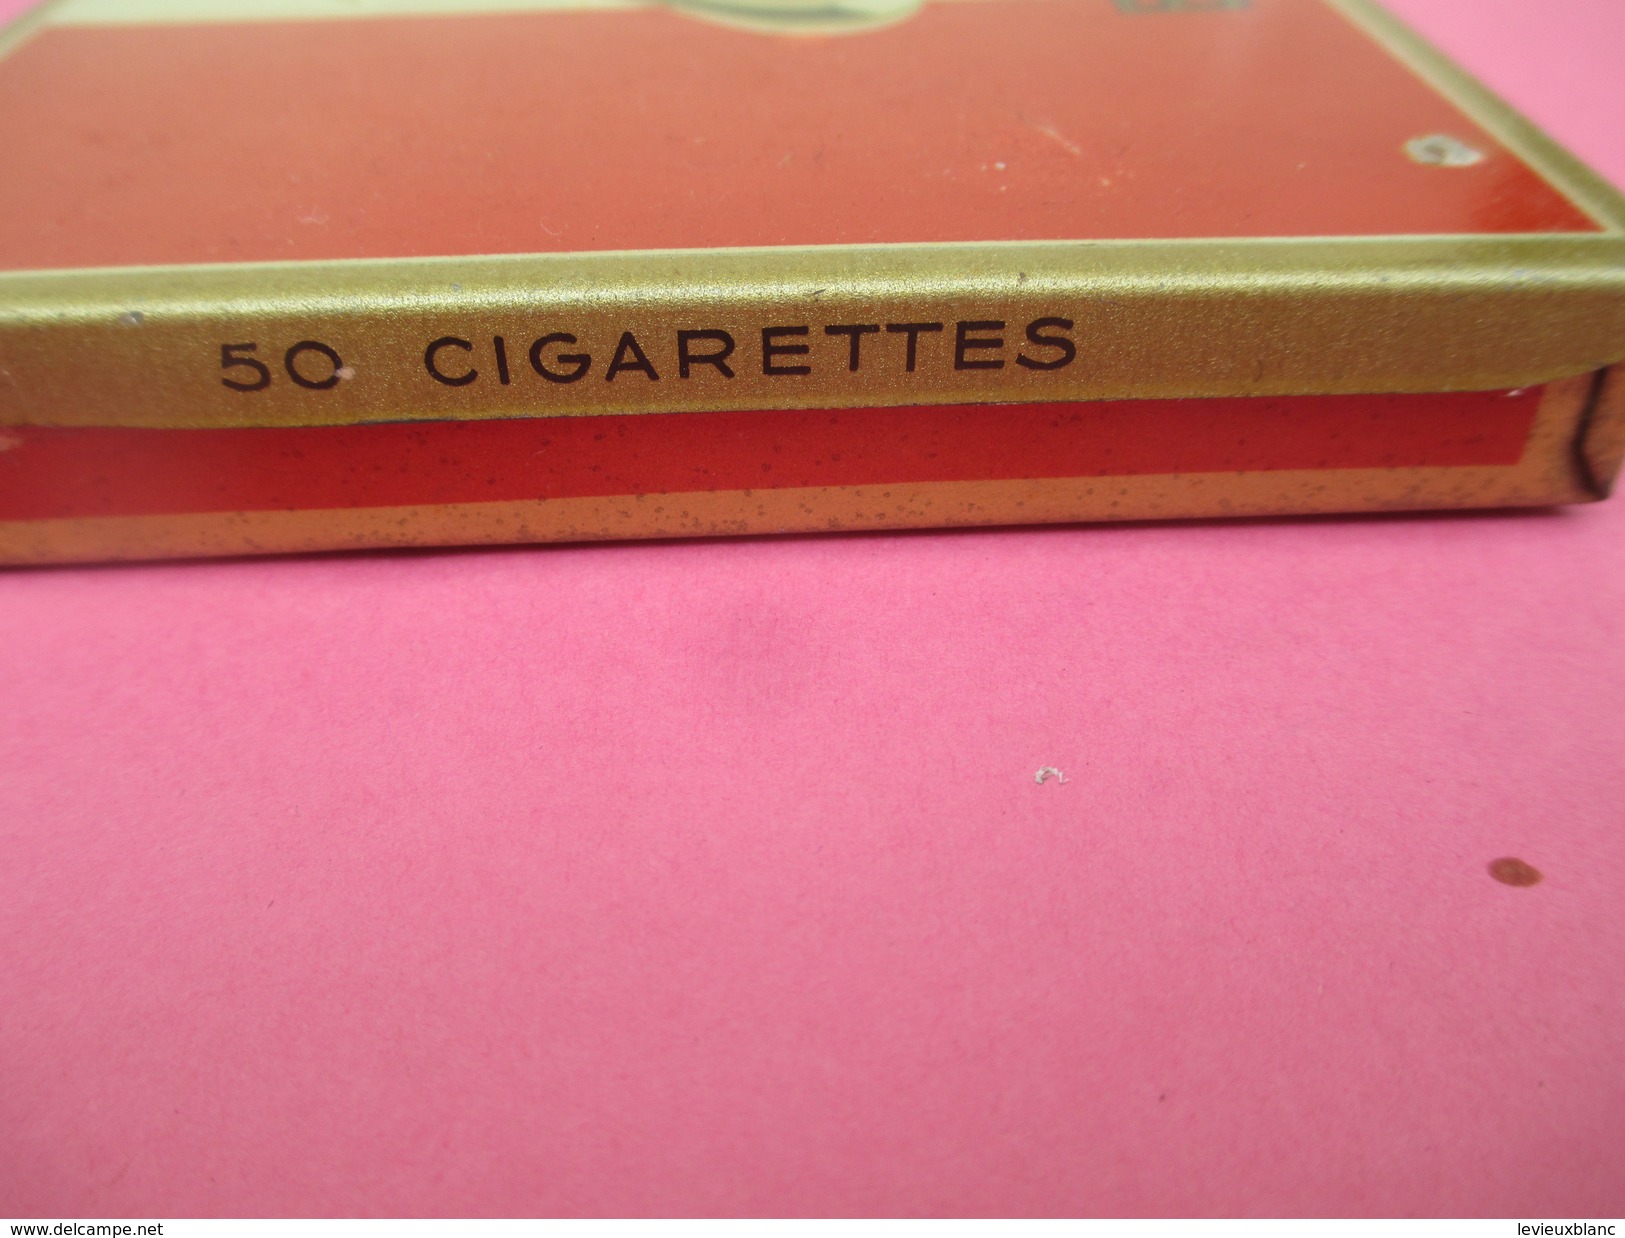 Boite Métallique Ancienne/Cigarettes /BALTO/ Goût Américain / Régie Française/ Vers 1950 -1960          BFPP131 - Cajas